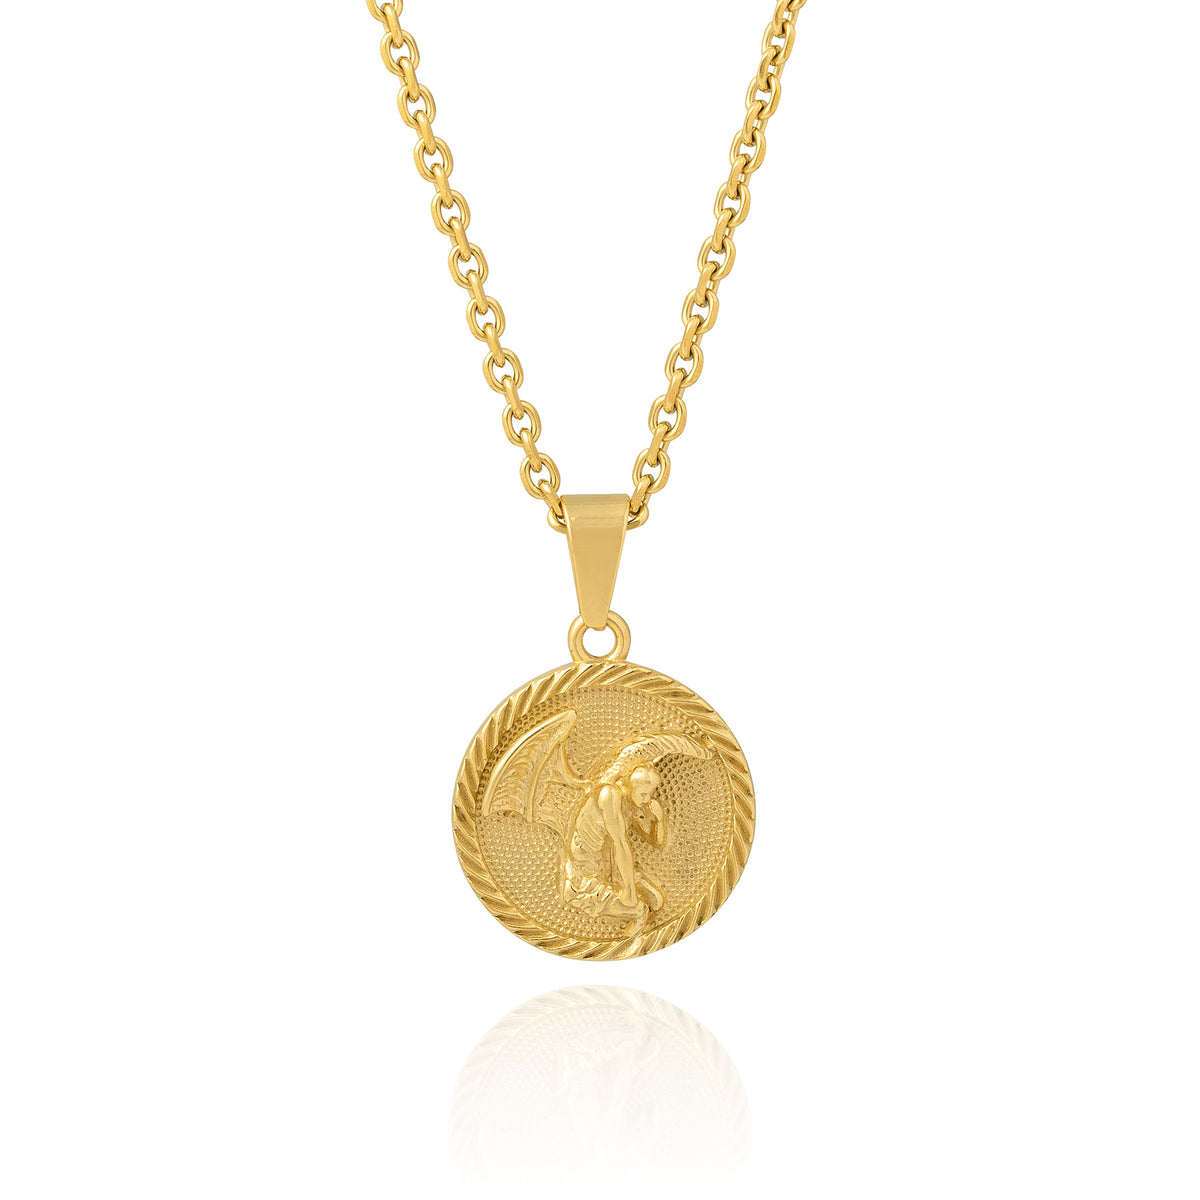 Golden Angel Medallion pendant on white